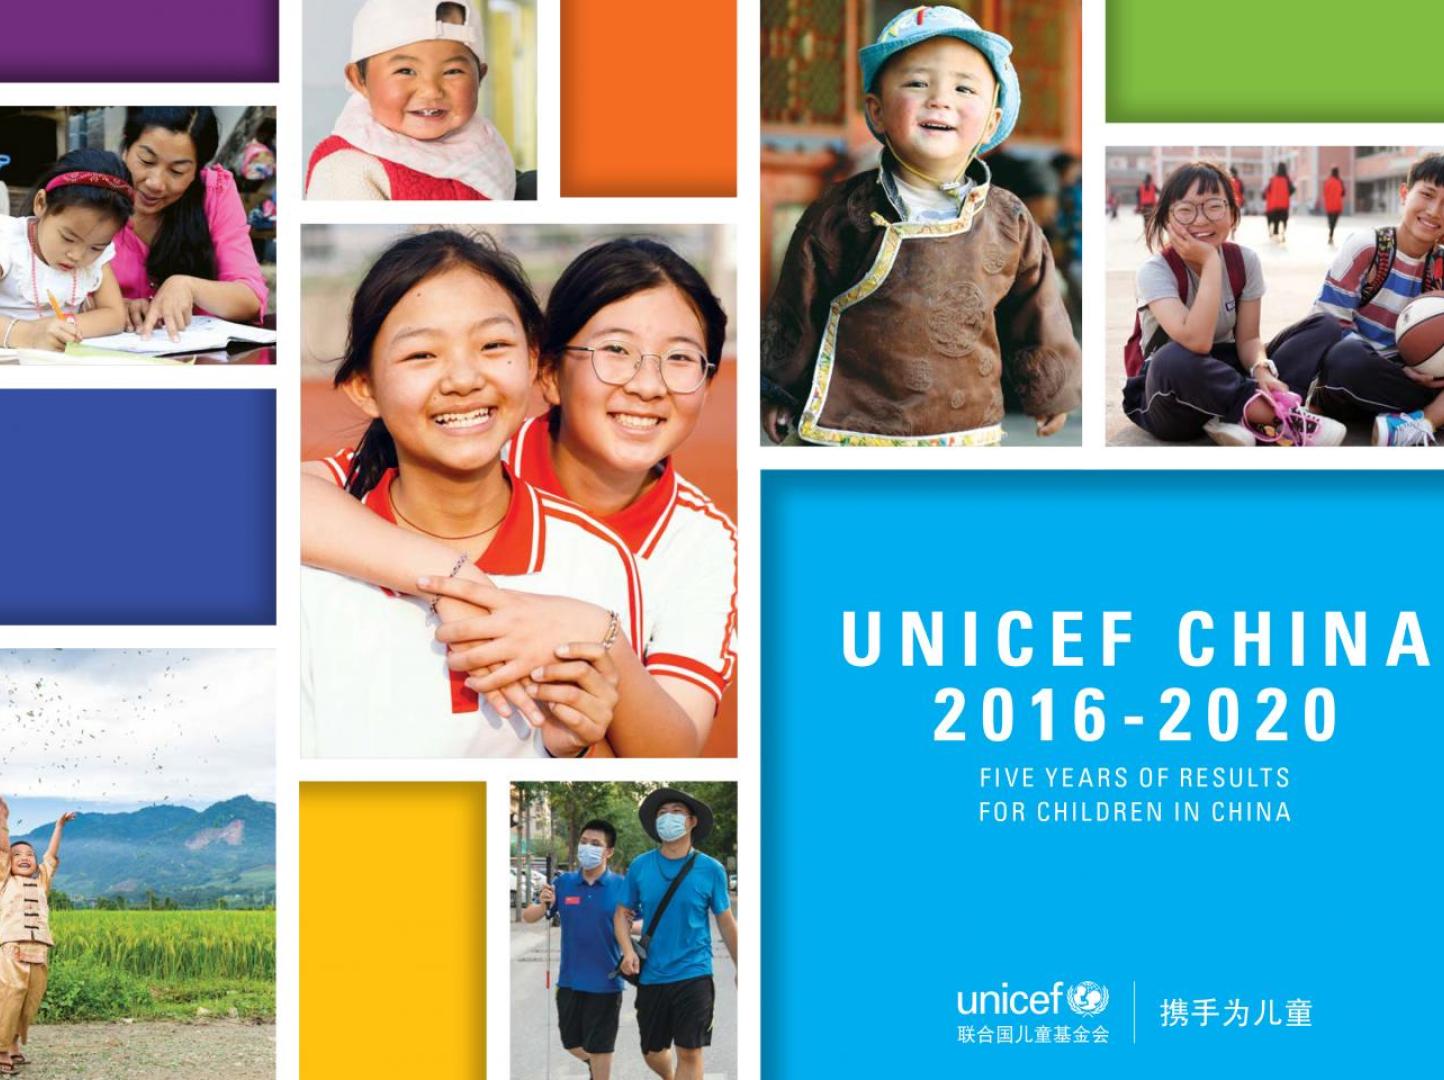 UNICEF China 2016-2020 - cover photo